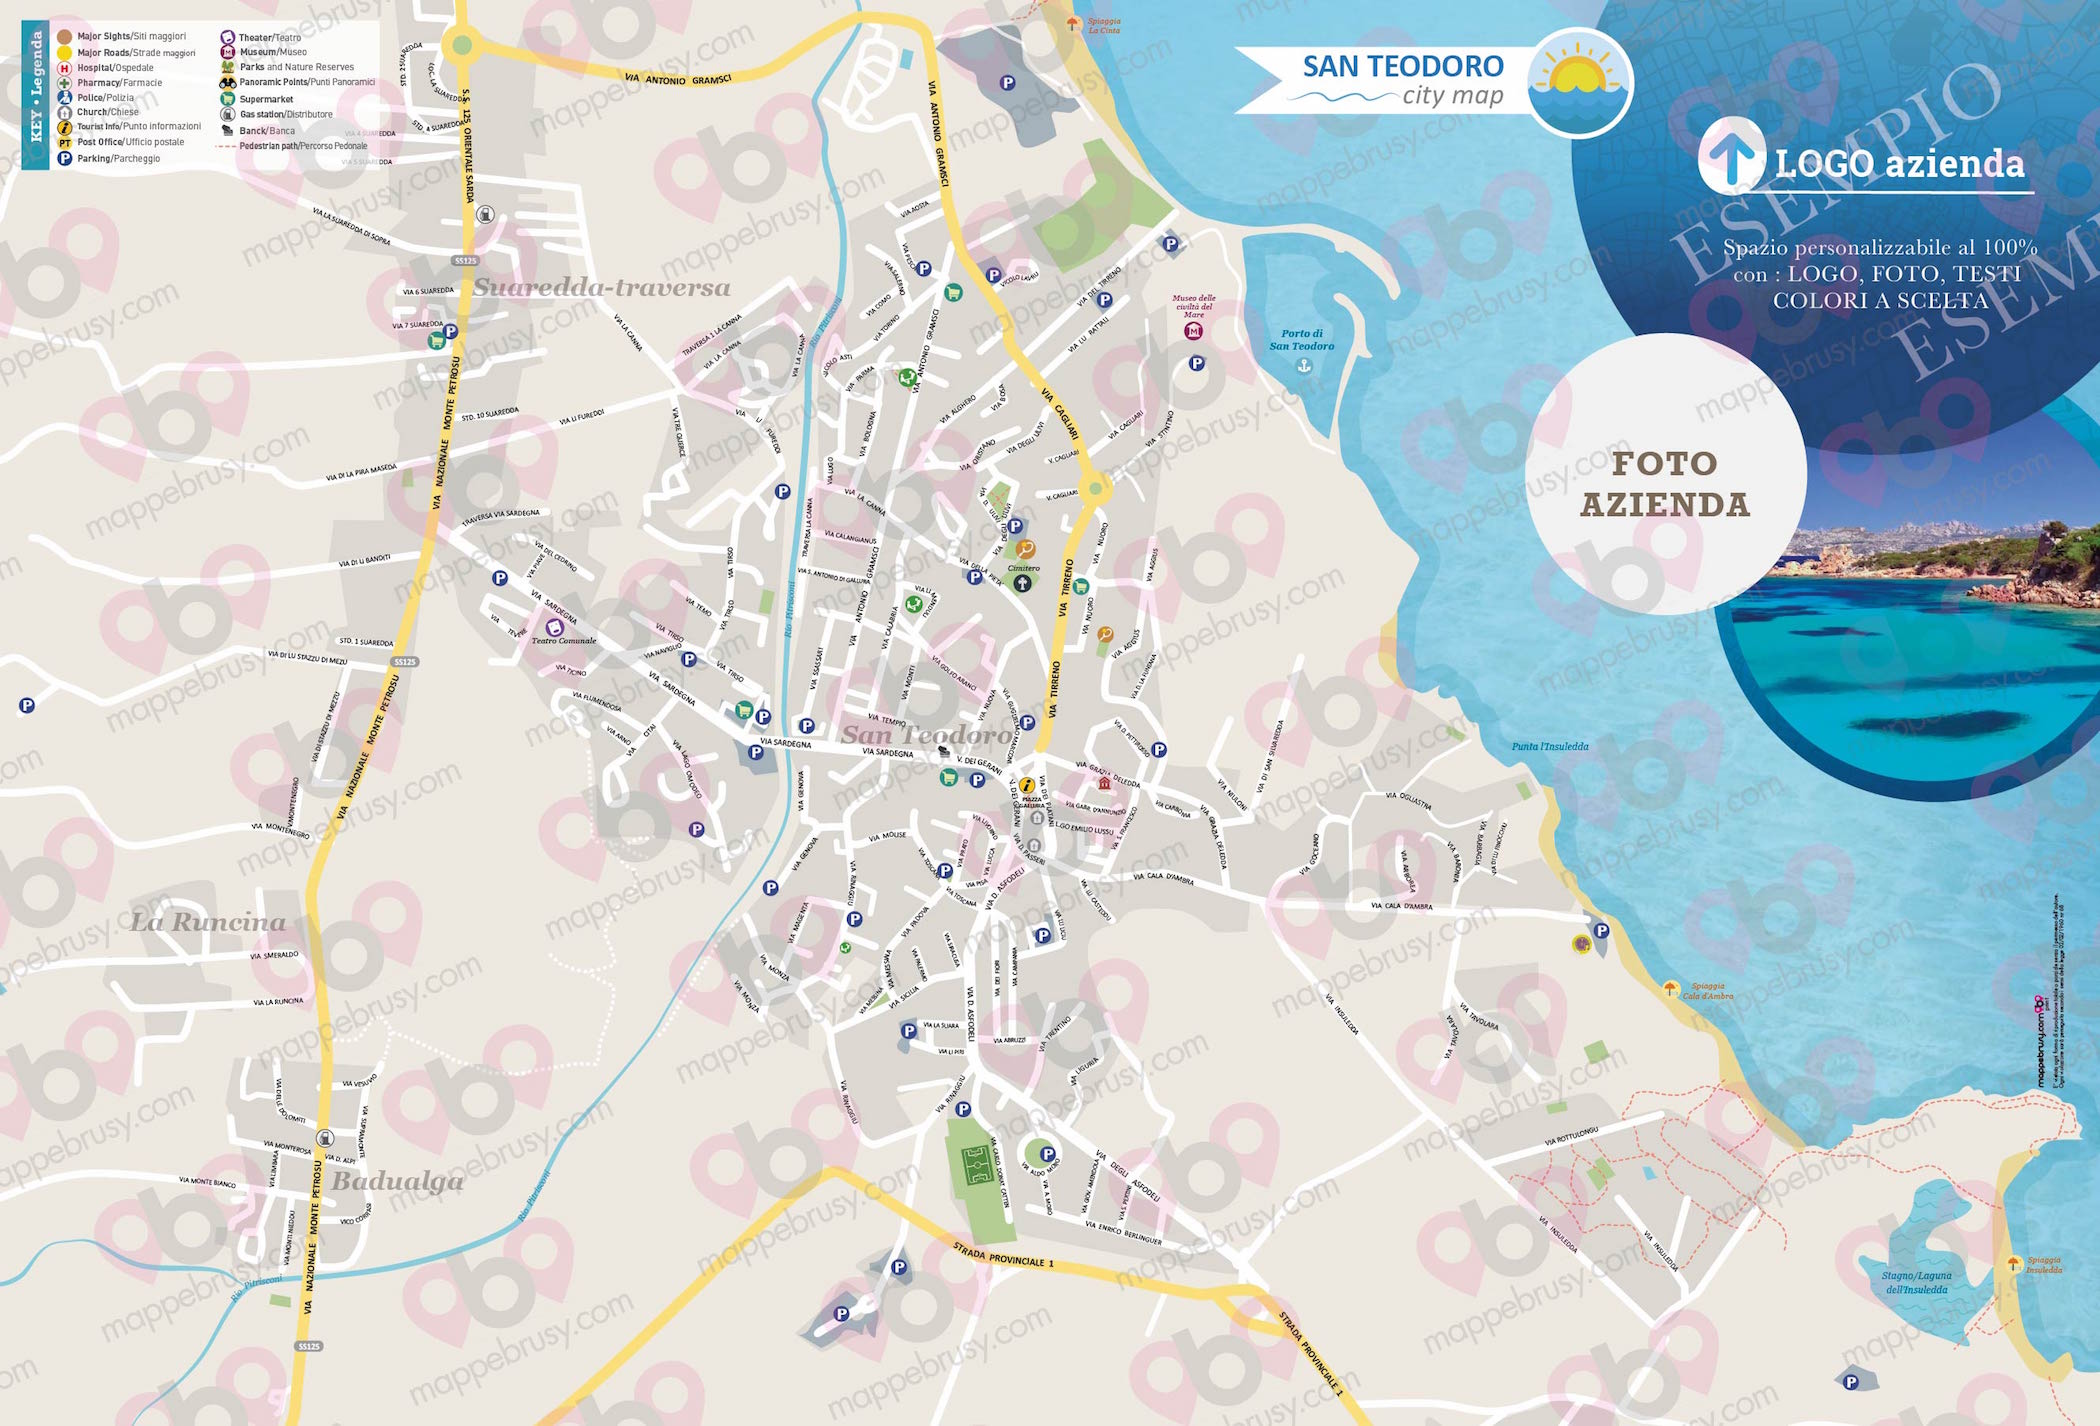 Mappa di San Teodoro - San Teodoro city map - mappa San Teodoro - mappa personalizzata di San Teodoro